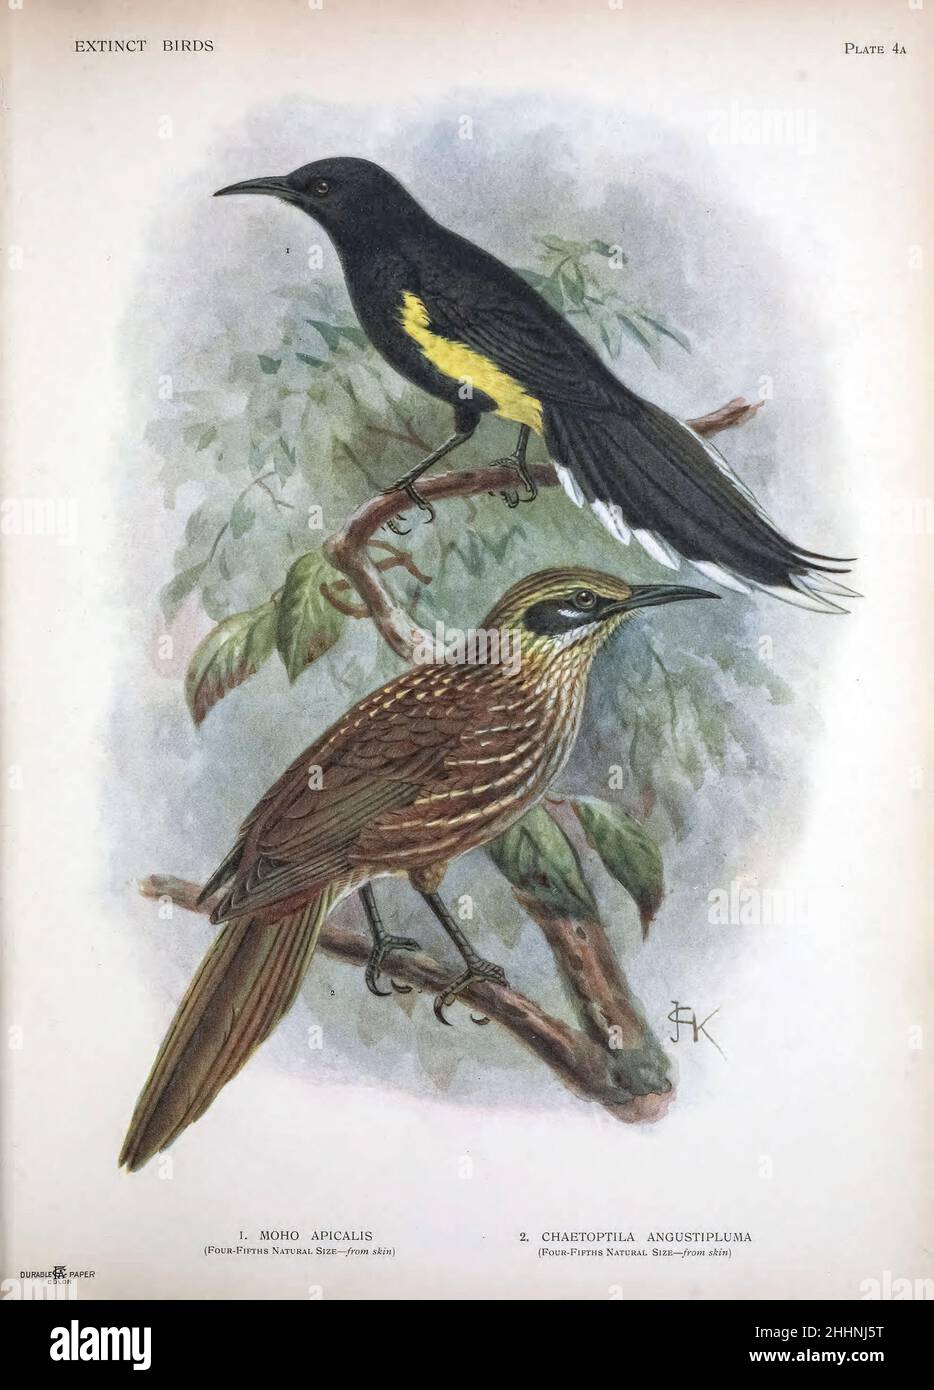 1. O‘ahu ‘ō‘ō (Moho apicalis) war ein Mitglied der ausgestorbenen Gattung der ‘ō‘ōs (Moho) innerhalb der ausgestorbenen Familie Mohoidae. Sie wurde zuvor als Mitglied der Australo-Pacific Honeyeaters (Meliphagidae) 2 angesehen. CDie Kioea (Chaetoptila angustipluma) war ein endemischer Hawaiianischer Vogel, der um die Mitte des 19th. Jahrhunderts ausgestorben wurde. Von "ausgestorbenen Vögeln" : ein Versuch, in einem Band einen kurzen Bericht über jene Vögel zu vereinen, die in historischen Zeiten ausgestorben sind : Das heißt, innerhalb der letzten sechs oder siebenhundert Jahre : zu denen einige hinzugefügt werden, die noch existieren, aber am Rande des Aussterbens sind. b Stockfoto